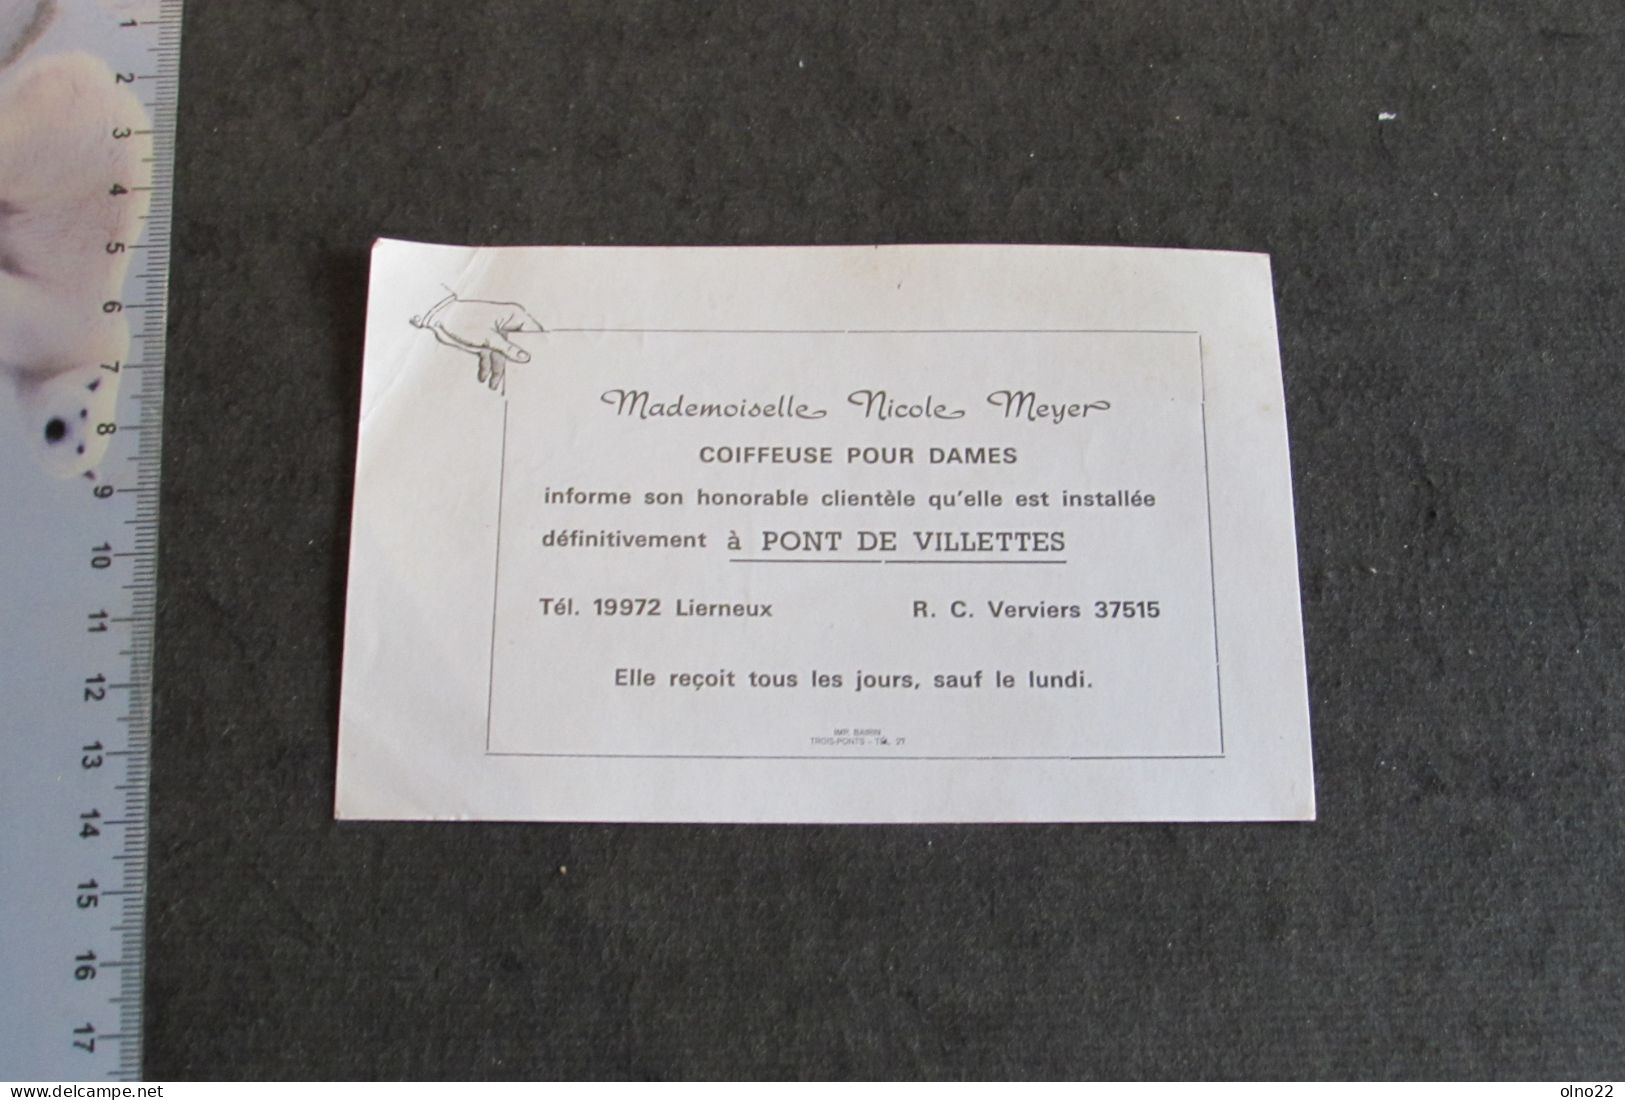 PONT DE VILLETTES - COIFEUSE DAMES NICOILE MEYER - INSTALLATION DEFINITIVE DE SON SALON DE COIFFURE - VOIR SCANS - Publicités